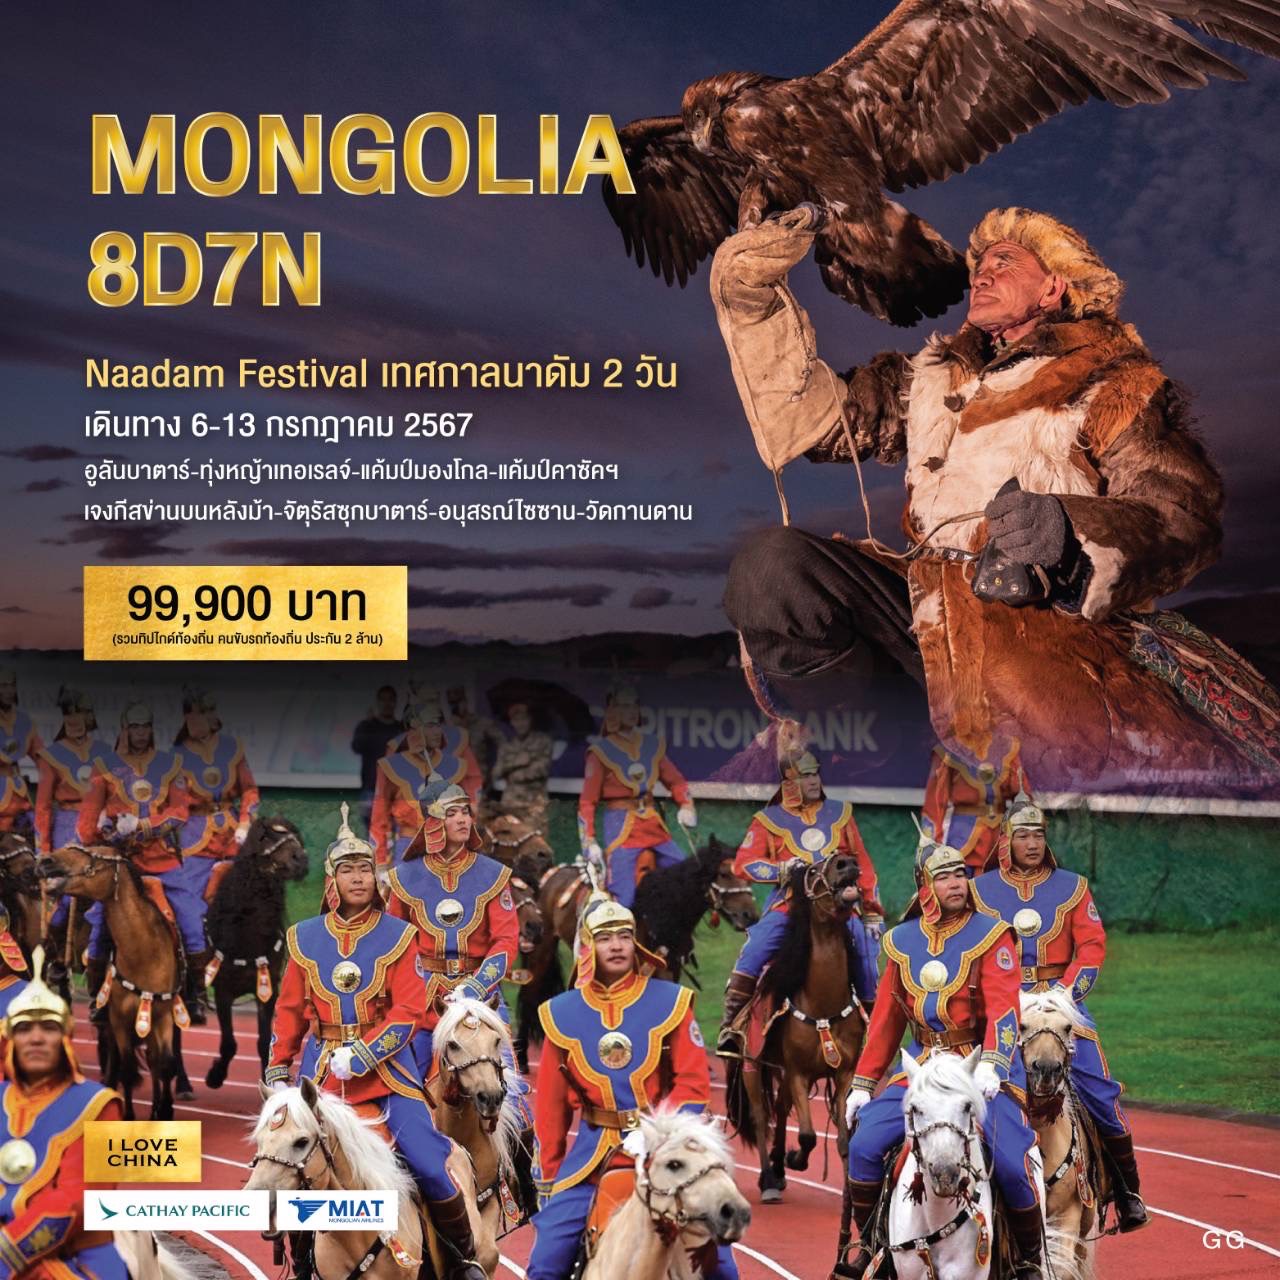 MONGOLIA 8D 7N